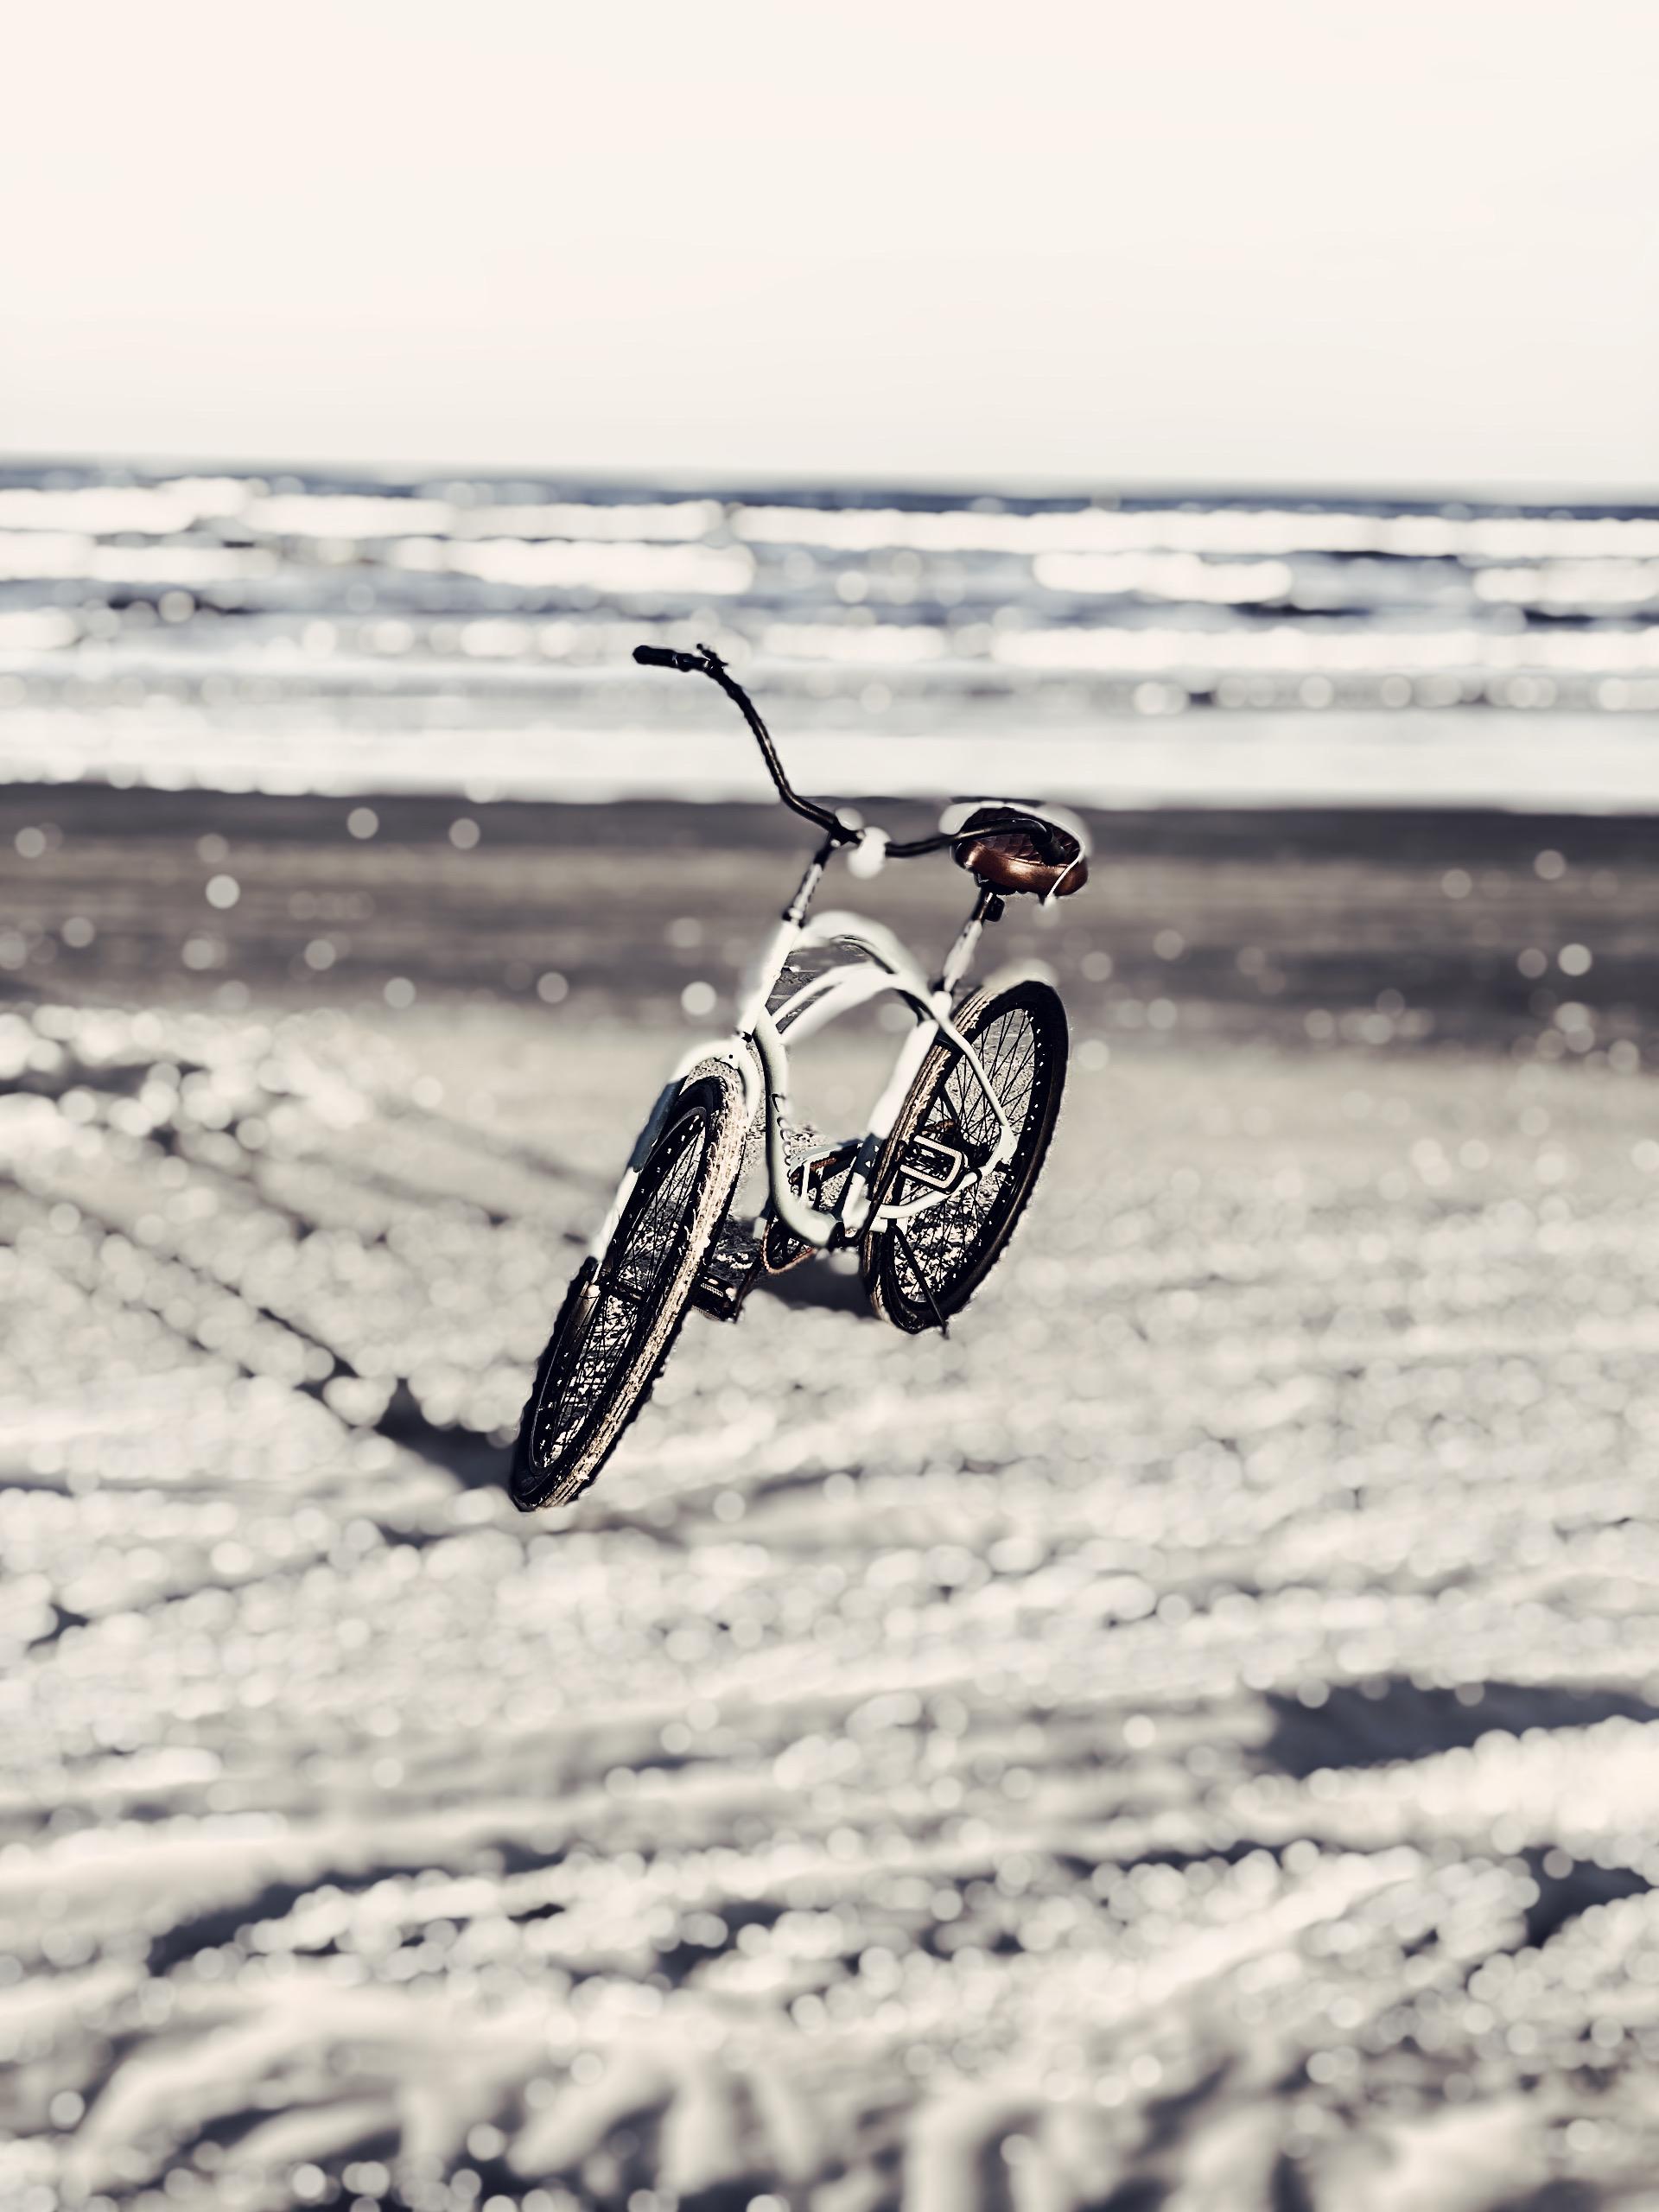 Beach_bike.jpeg